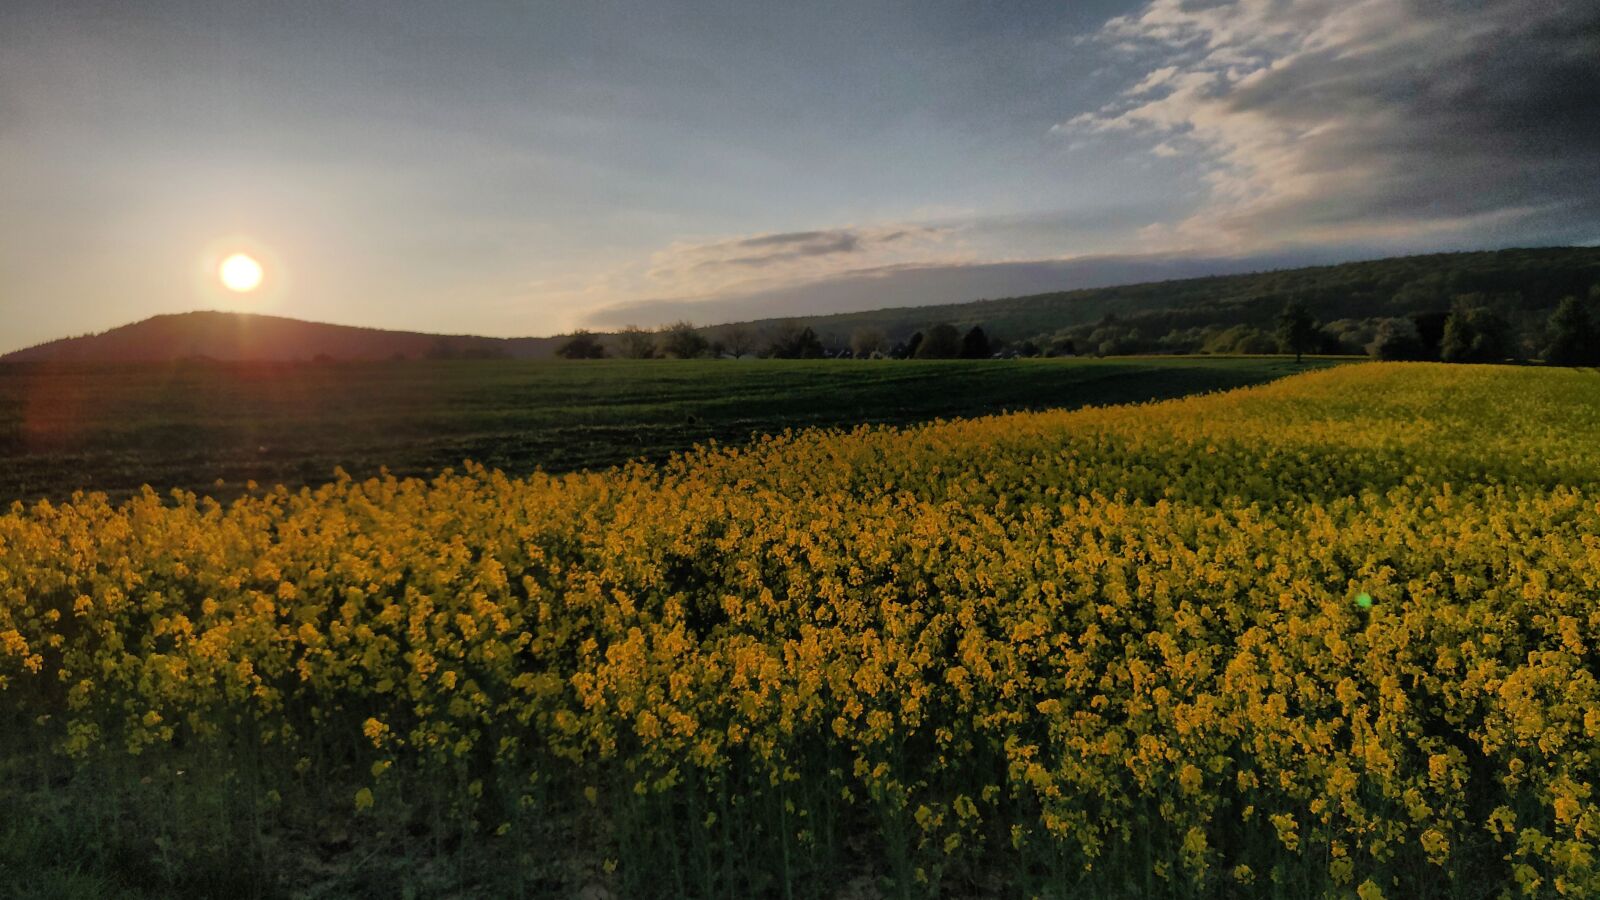 OnePlus 6T sample photo. Oilseed rape, sun, sunset photography